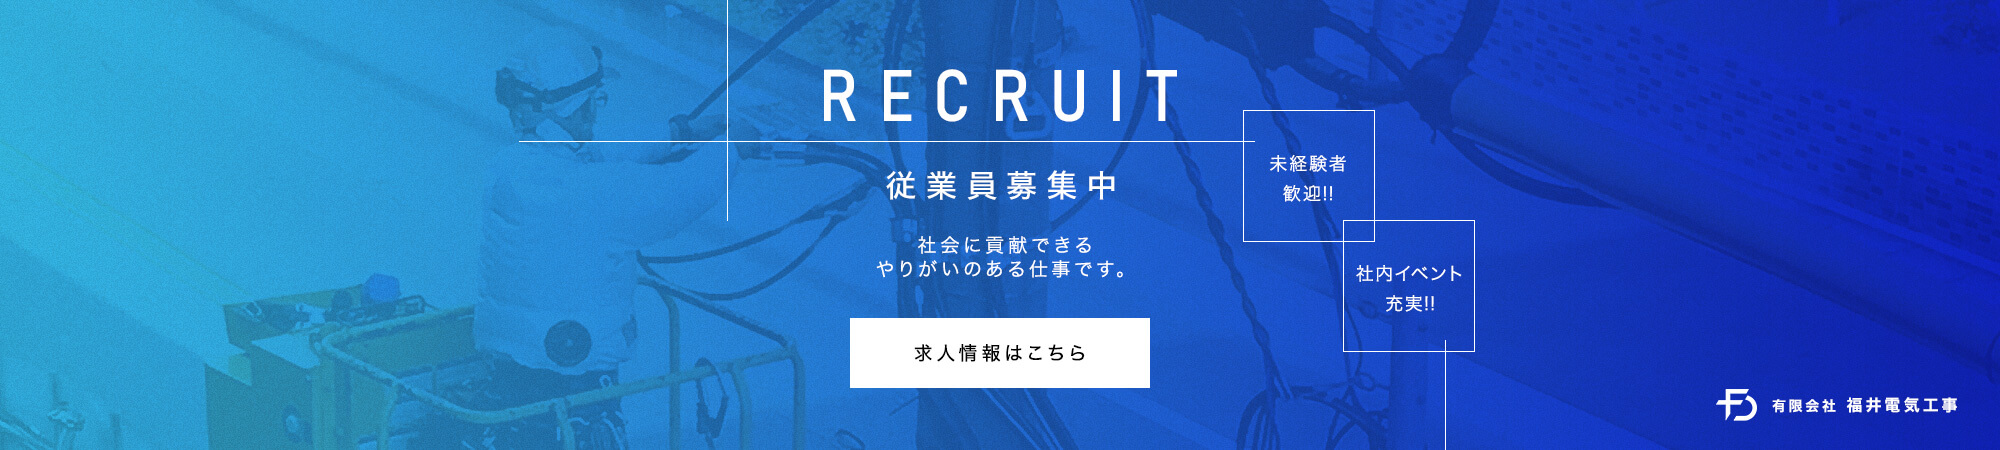 banner_recruit_full